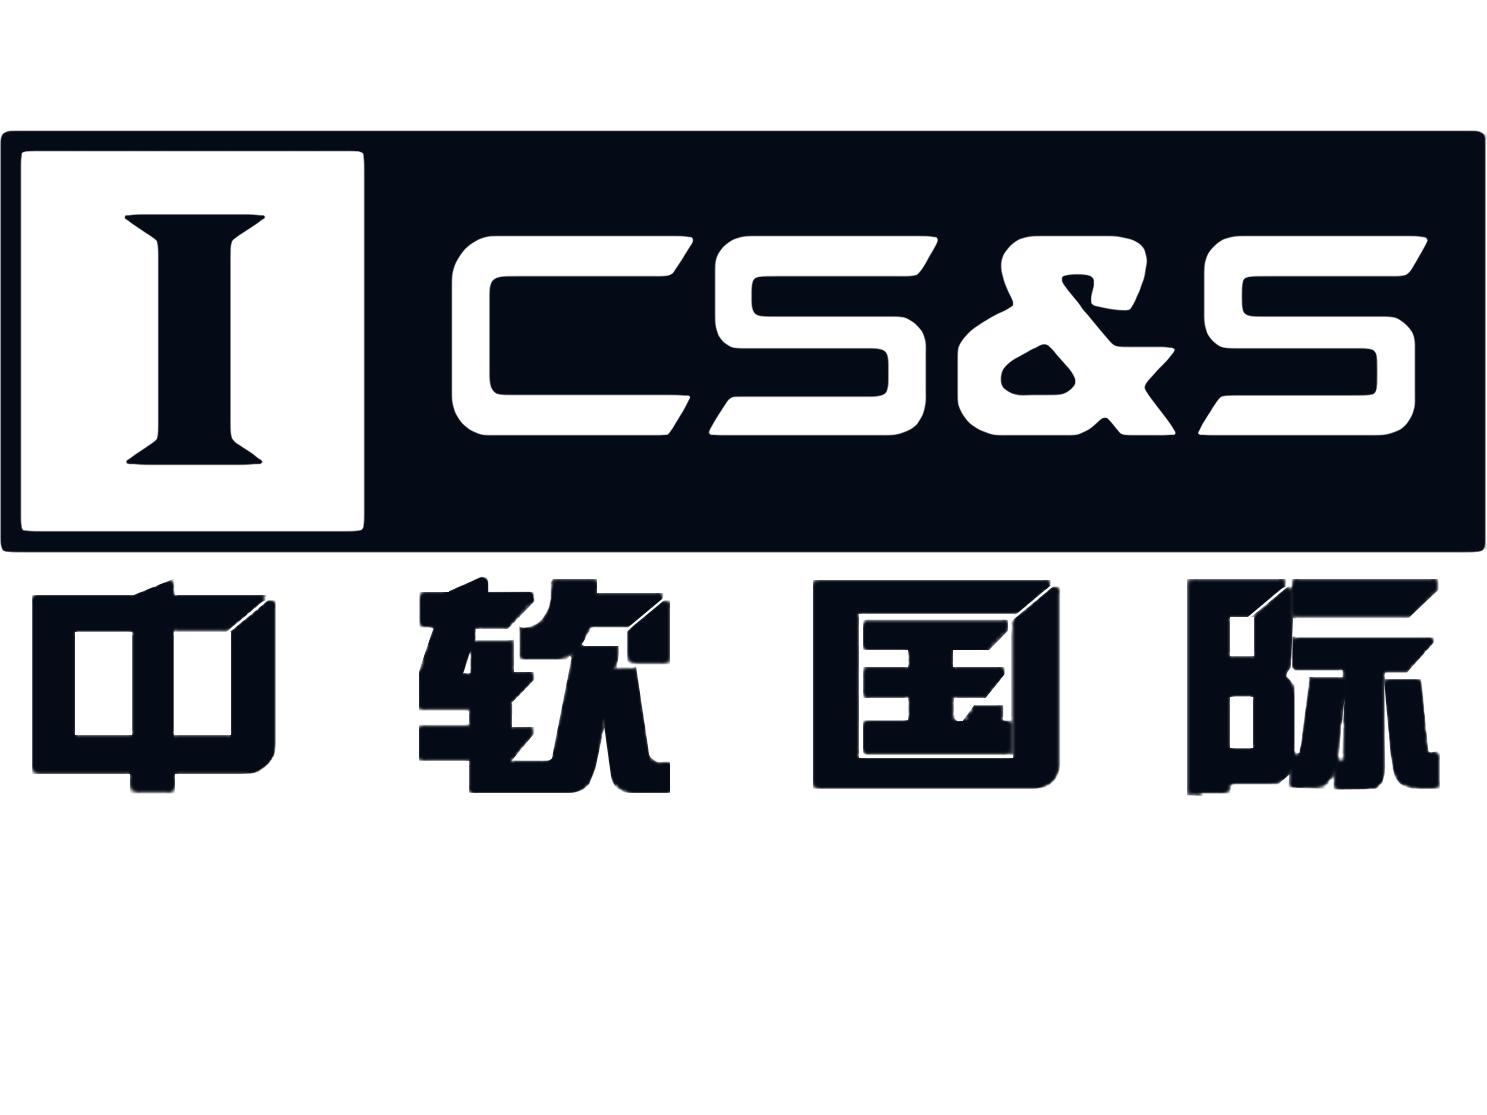 中软国际logo含义图片